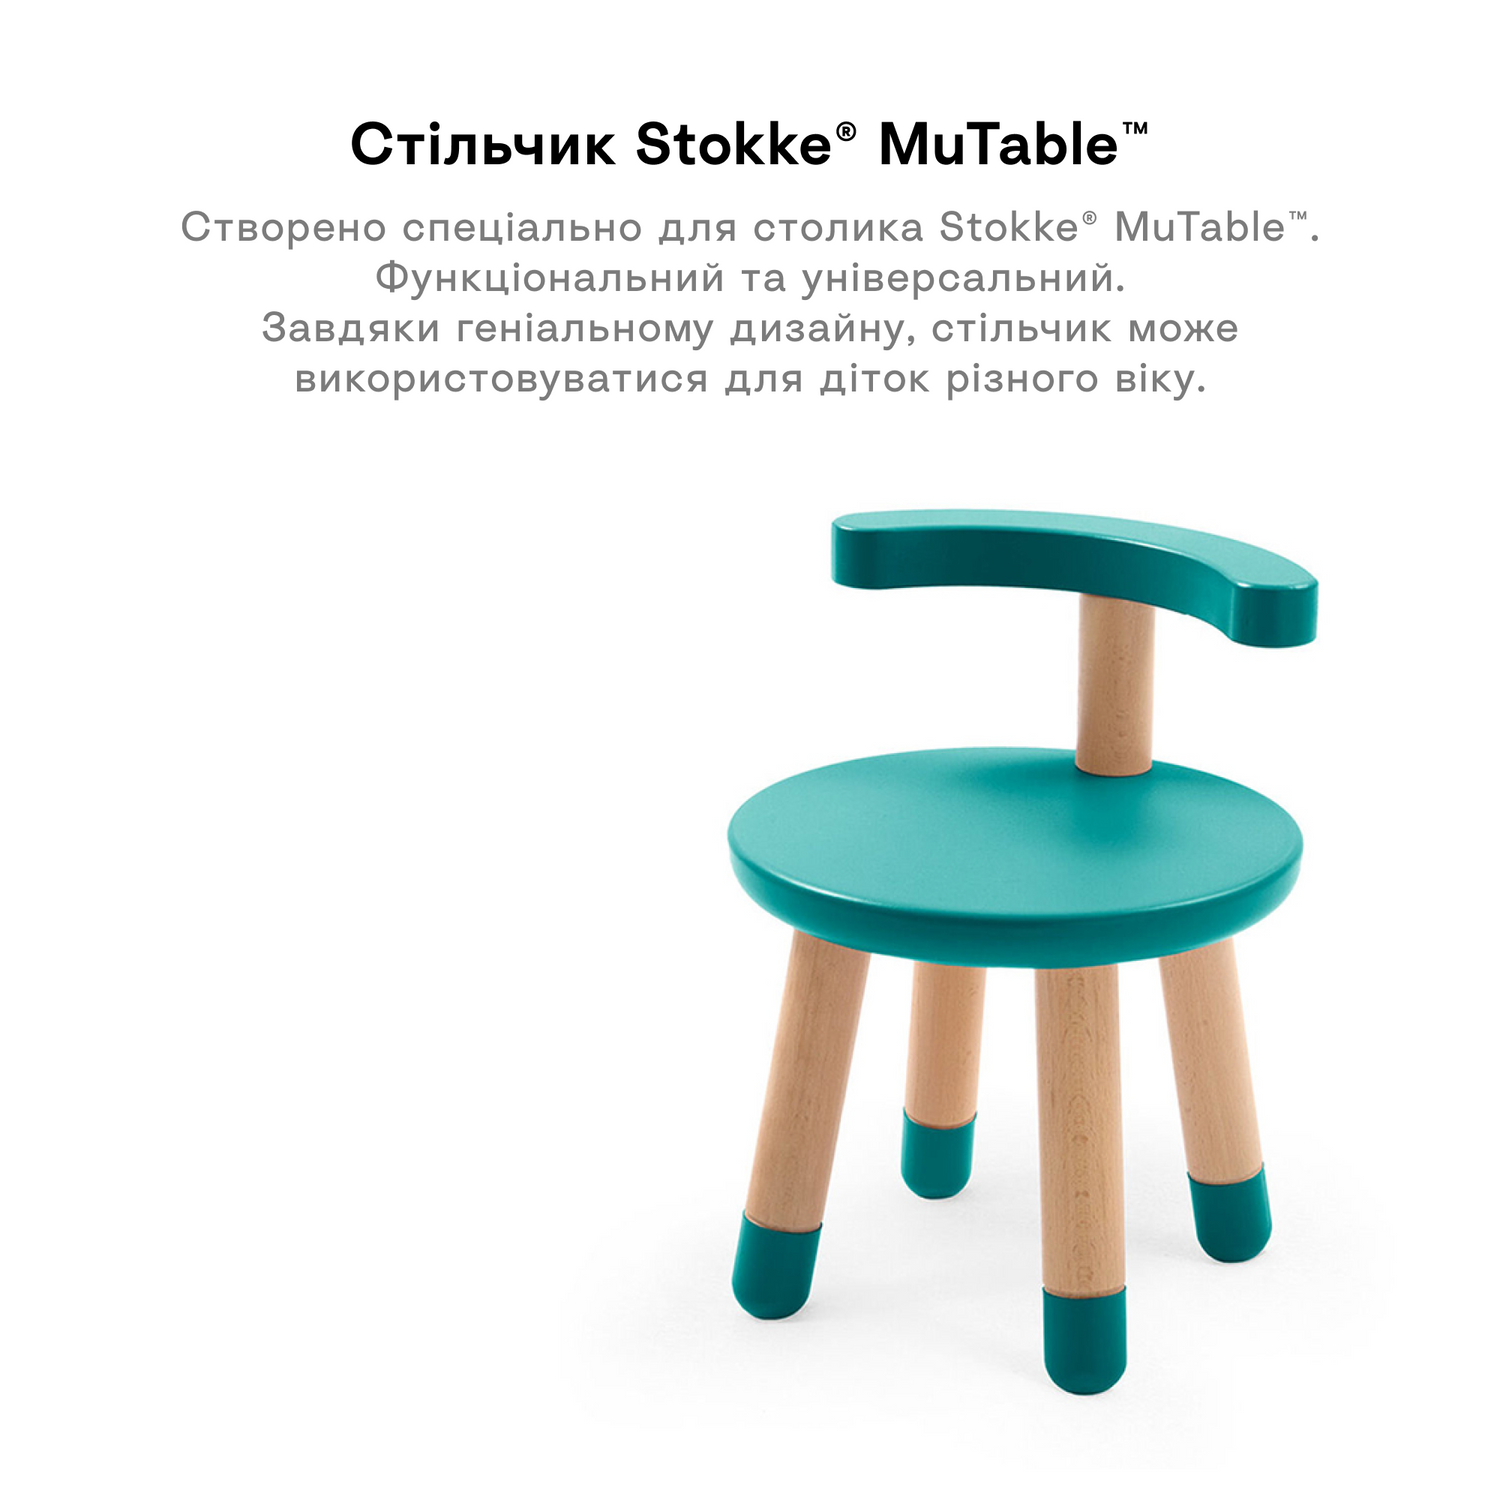 Дитячий стілець Stokke MuTable, бірюзовий (581805) - фото 3